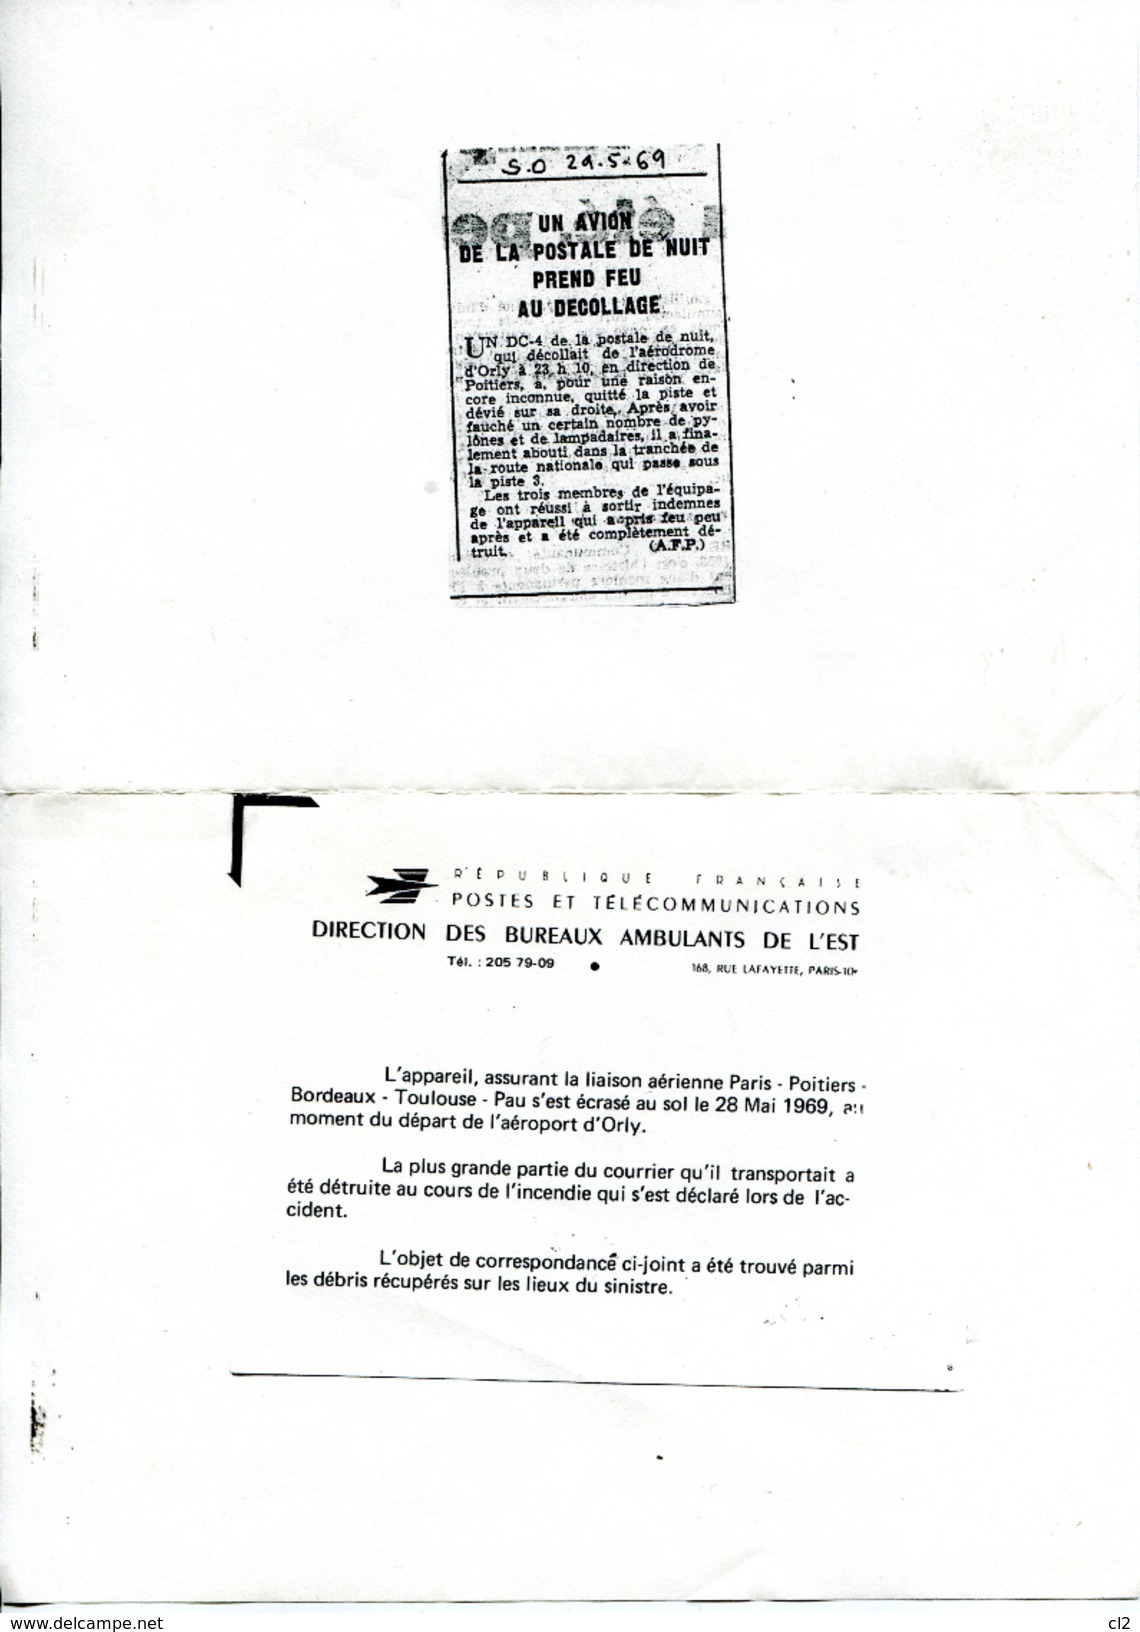 # - 28 Mai 1969 - ORLY - Accident D'un DC4 De La Postale - Courrier Ré-acheminé Par La Poste - Ramppost